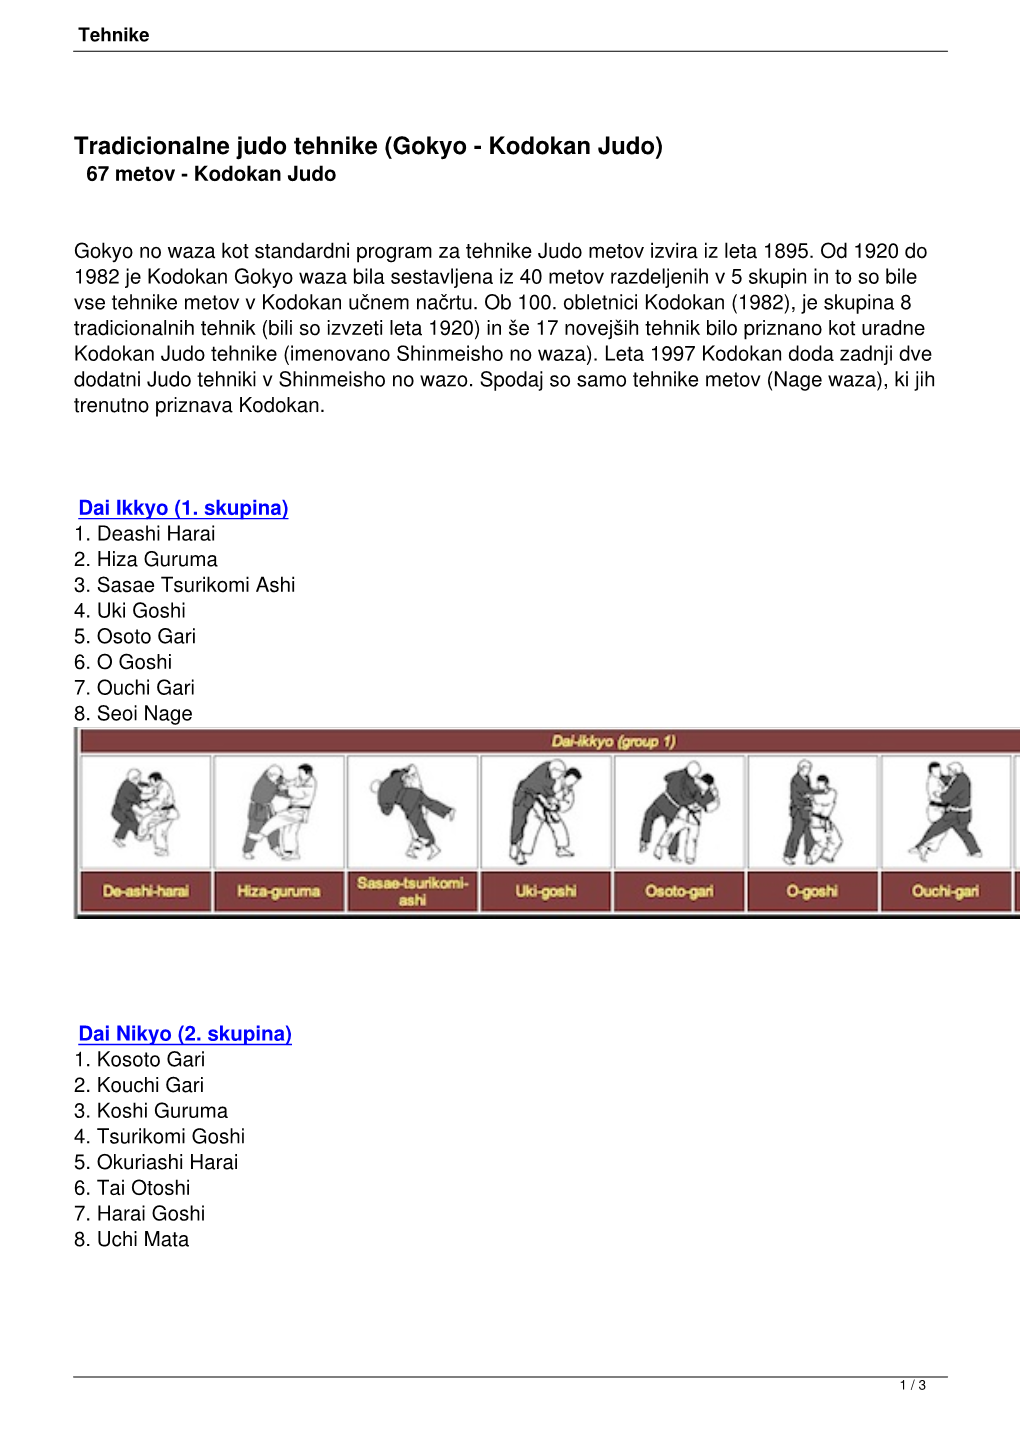 Tradicionalne Judo Tehnike (Gokyo - Kodokan Judo) 67 Metov - Kodokan Judo